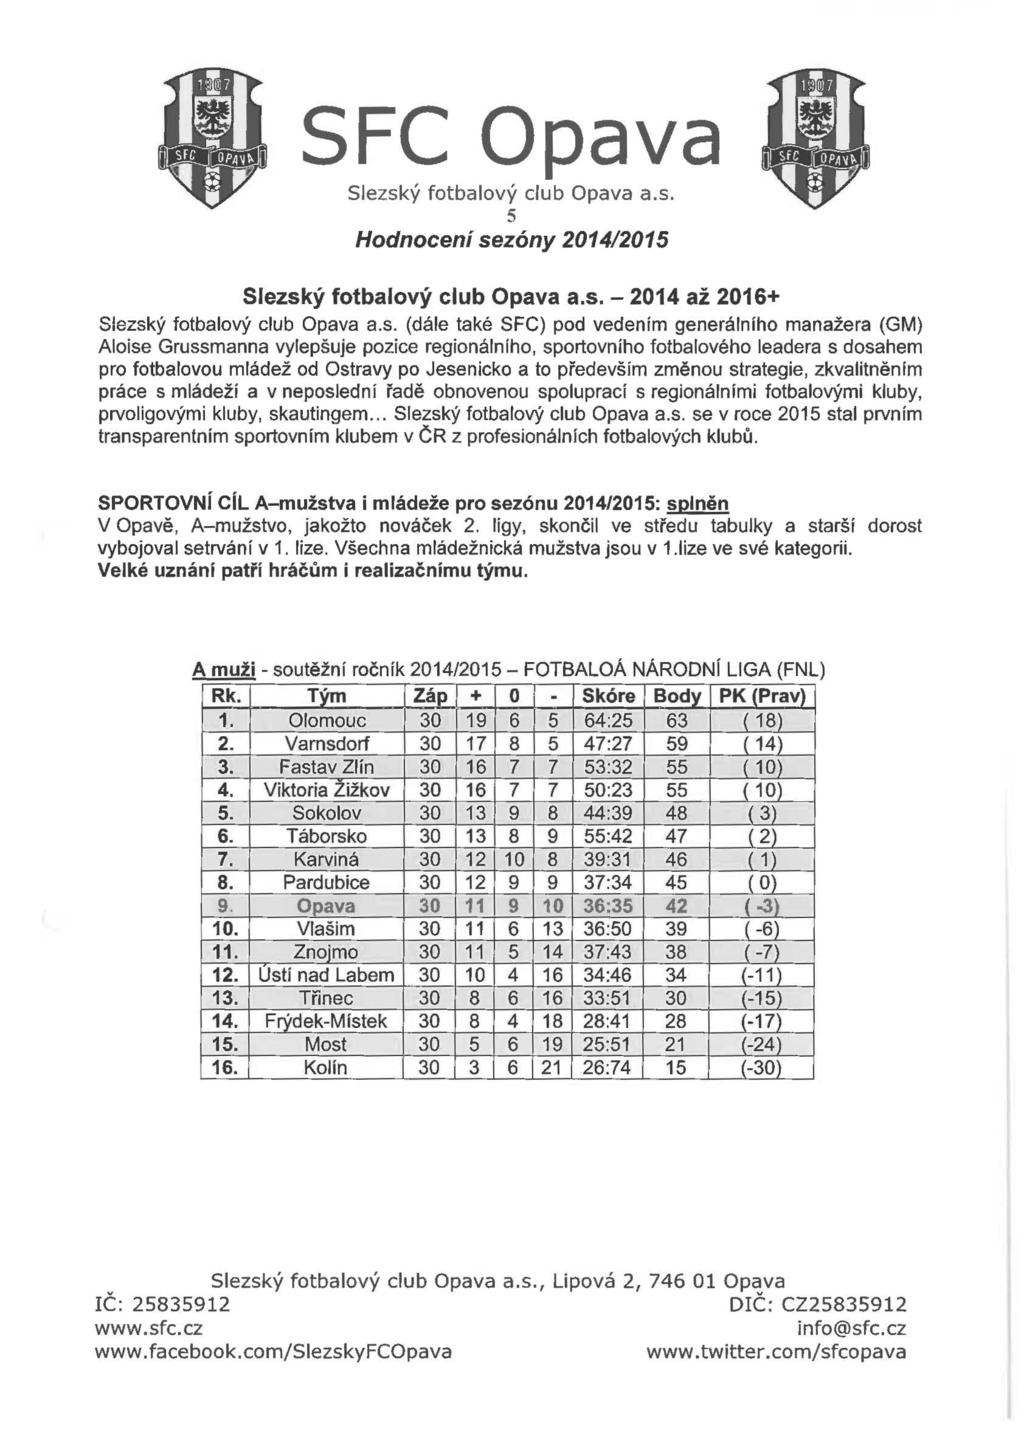 5 Hodnocení sezóny 2014/2015-2014 až 2016+ (dále také SFC) pod vedením generálního manažera (GM) Aloise Grussmanna vylepšuje pozice regionálního, sportovního fotbalového leadera s dosahem pro